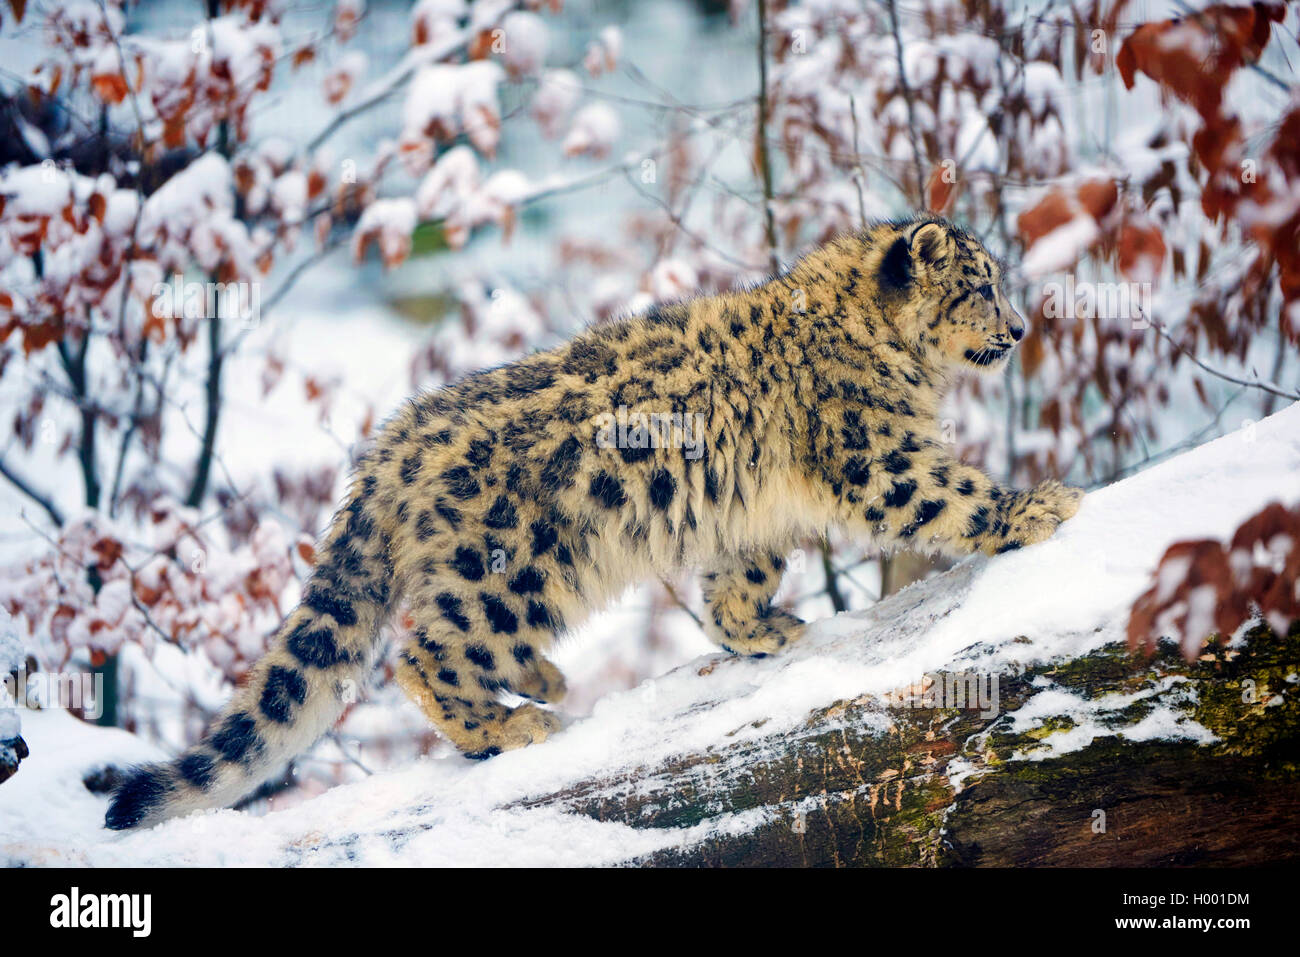 Léopard des neiges (Uncia uncia, Panthera uncia), jeune animal dans la neige Banque D'Images